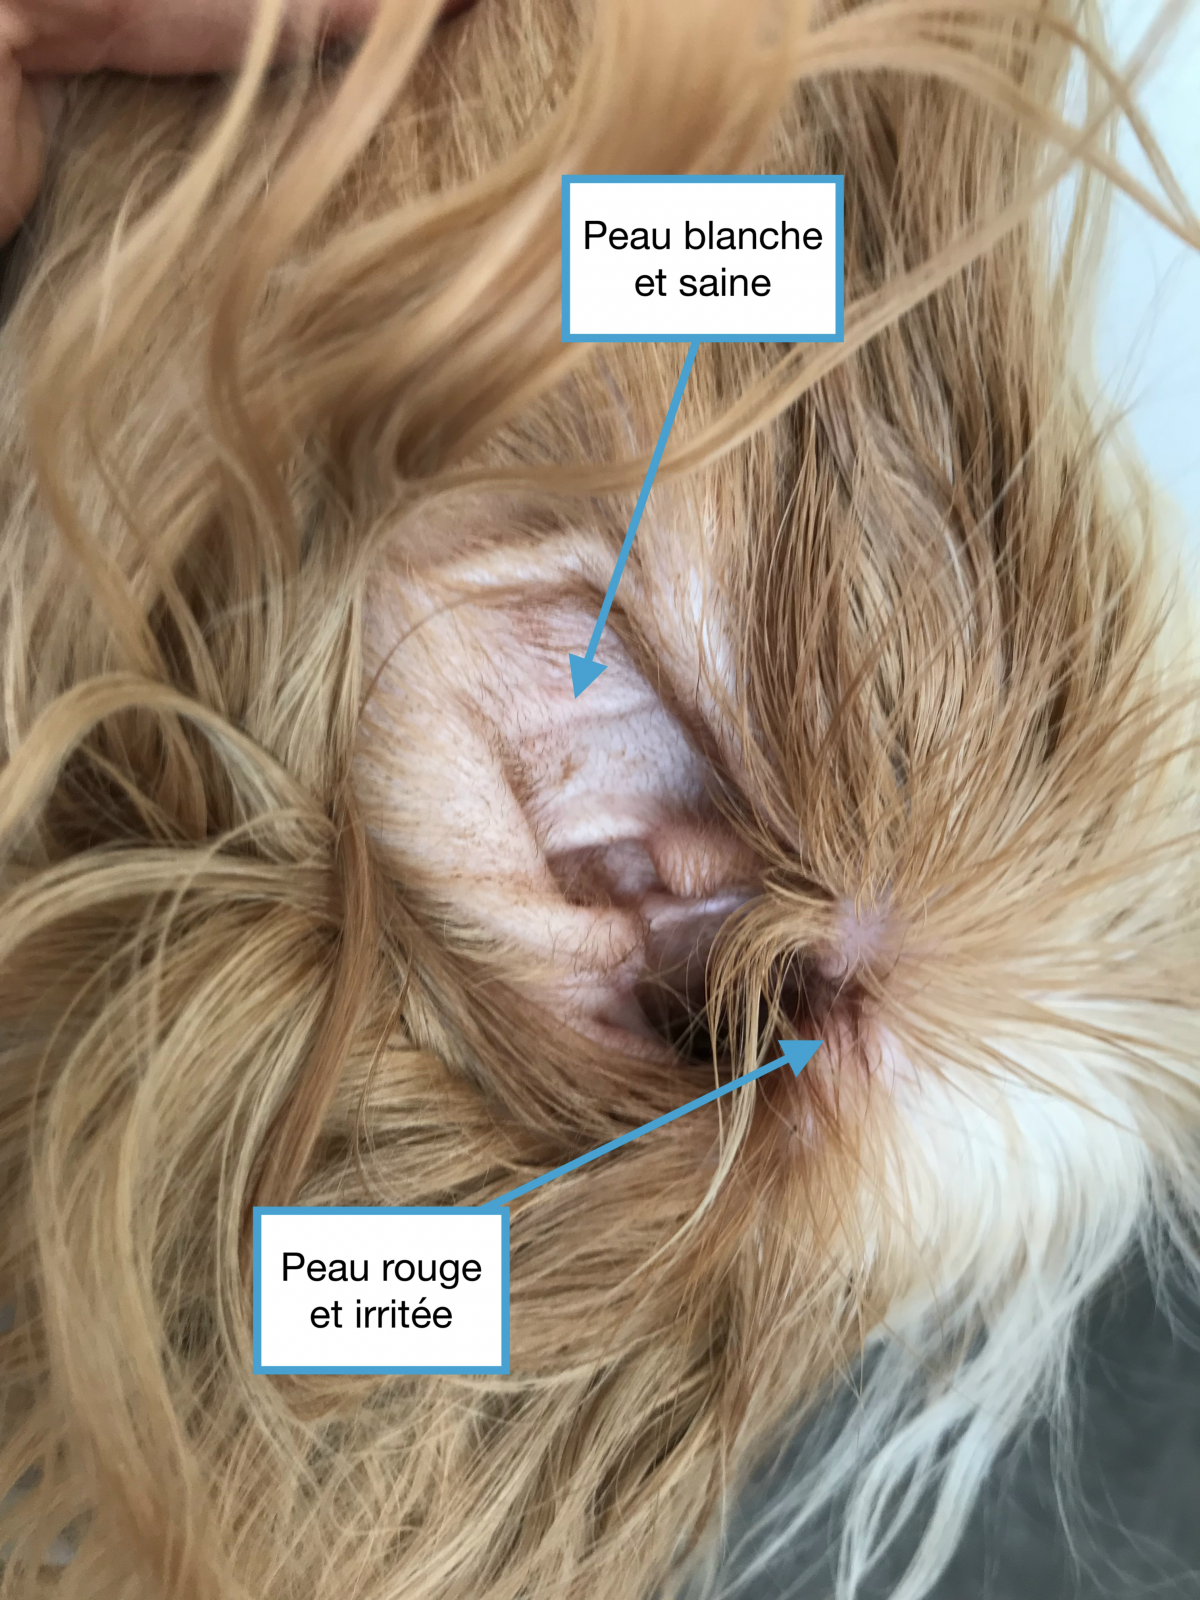 La santé chez le chien : les oreilles rouges - Sonotix